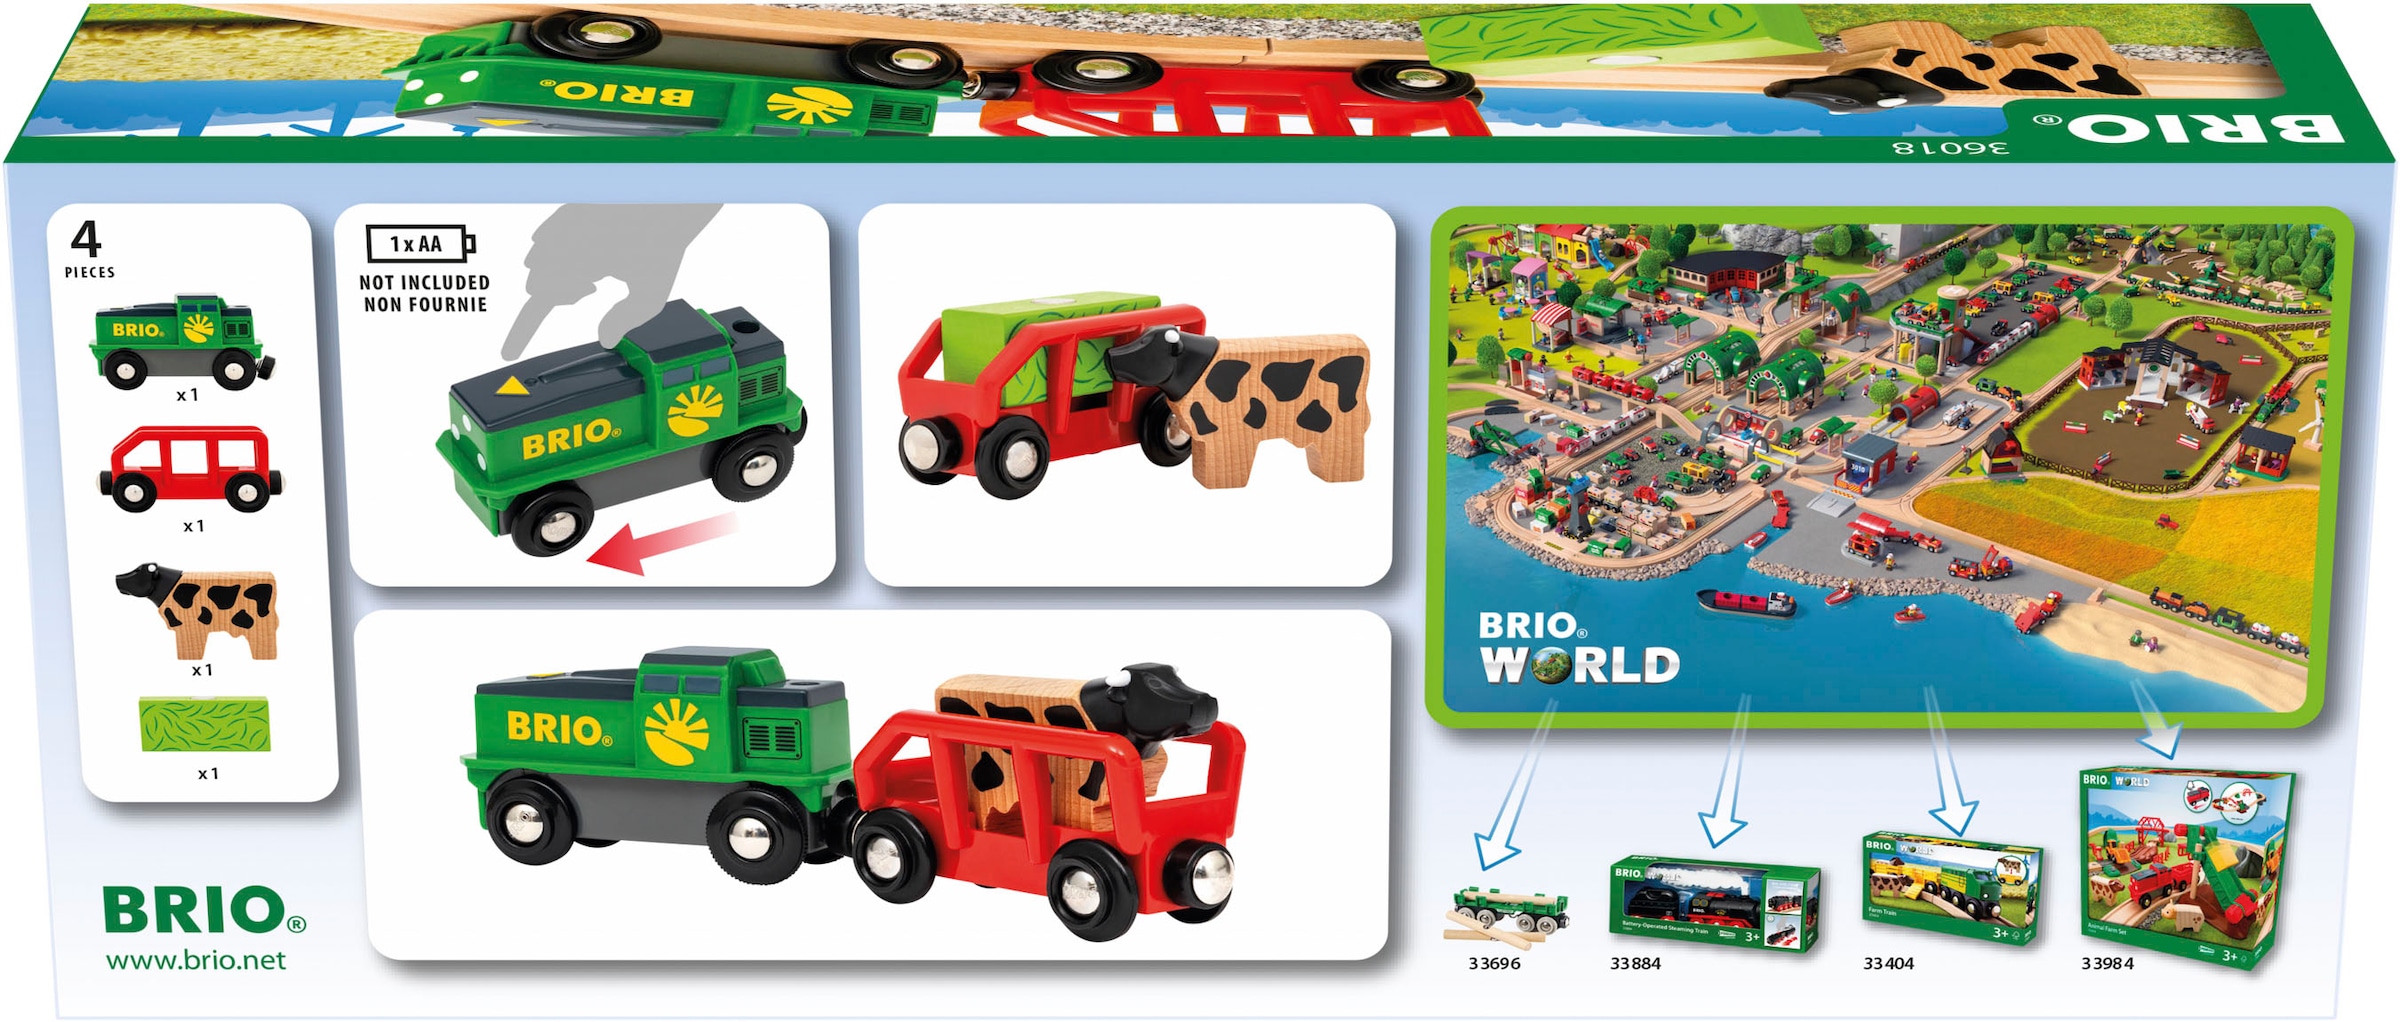 BRIO® Spielzeug-Eisenbahn »BRIO® WORLD, Bauernhof Batterie-Zug«, FSC®- schützt Wald - weltweit